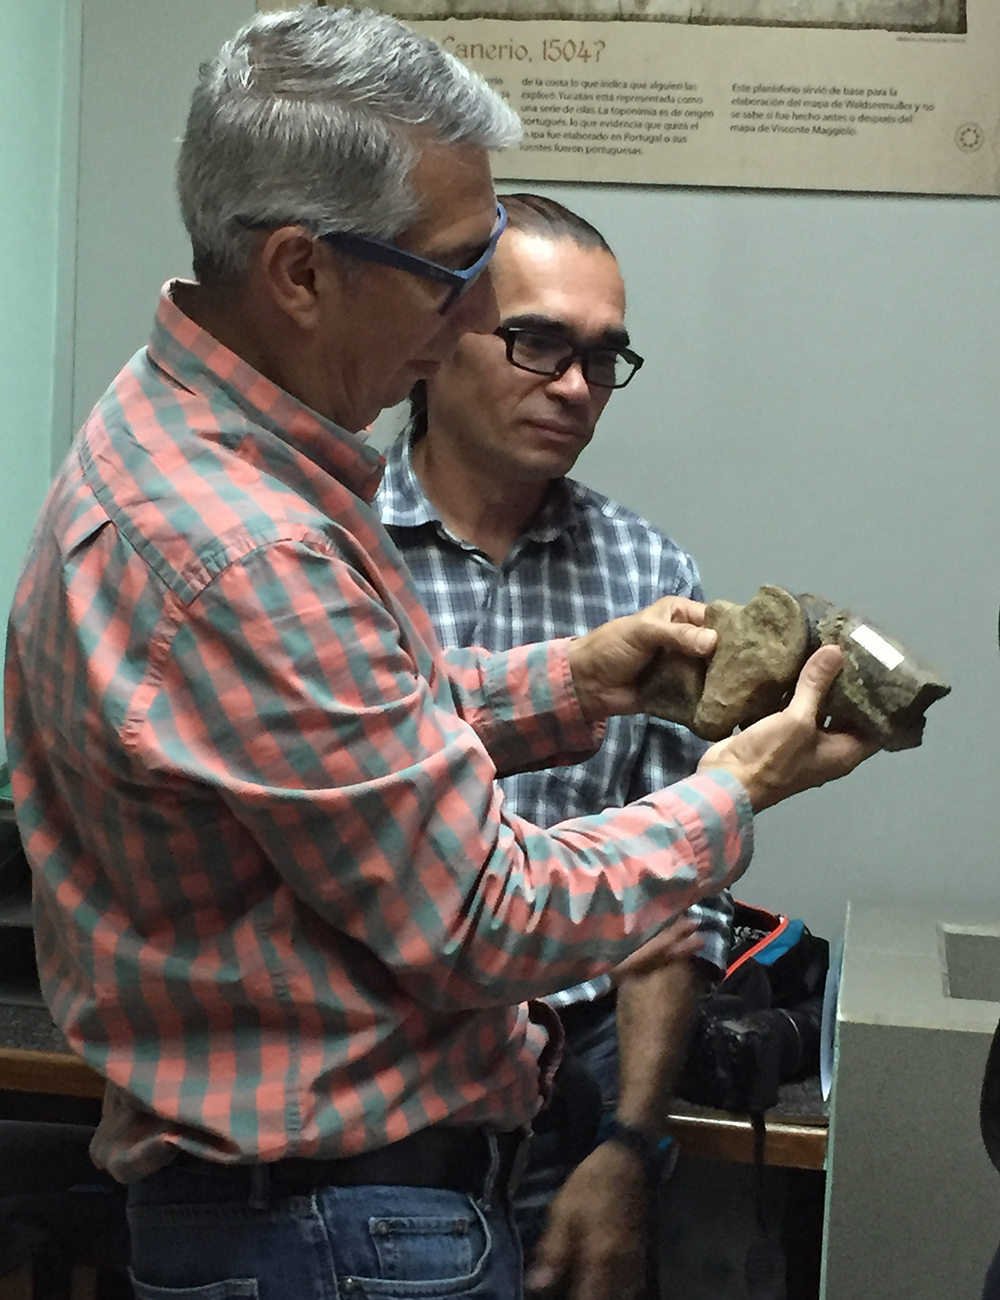 Los paleontólogos César Laurito (al frente) y Ascanio Rincón articulan dos piezas de los fósiles encontrados.